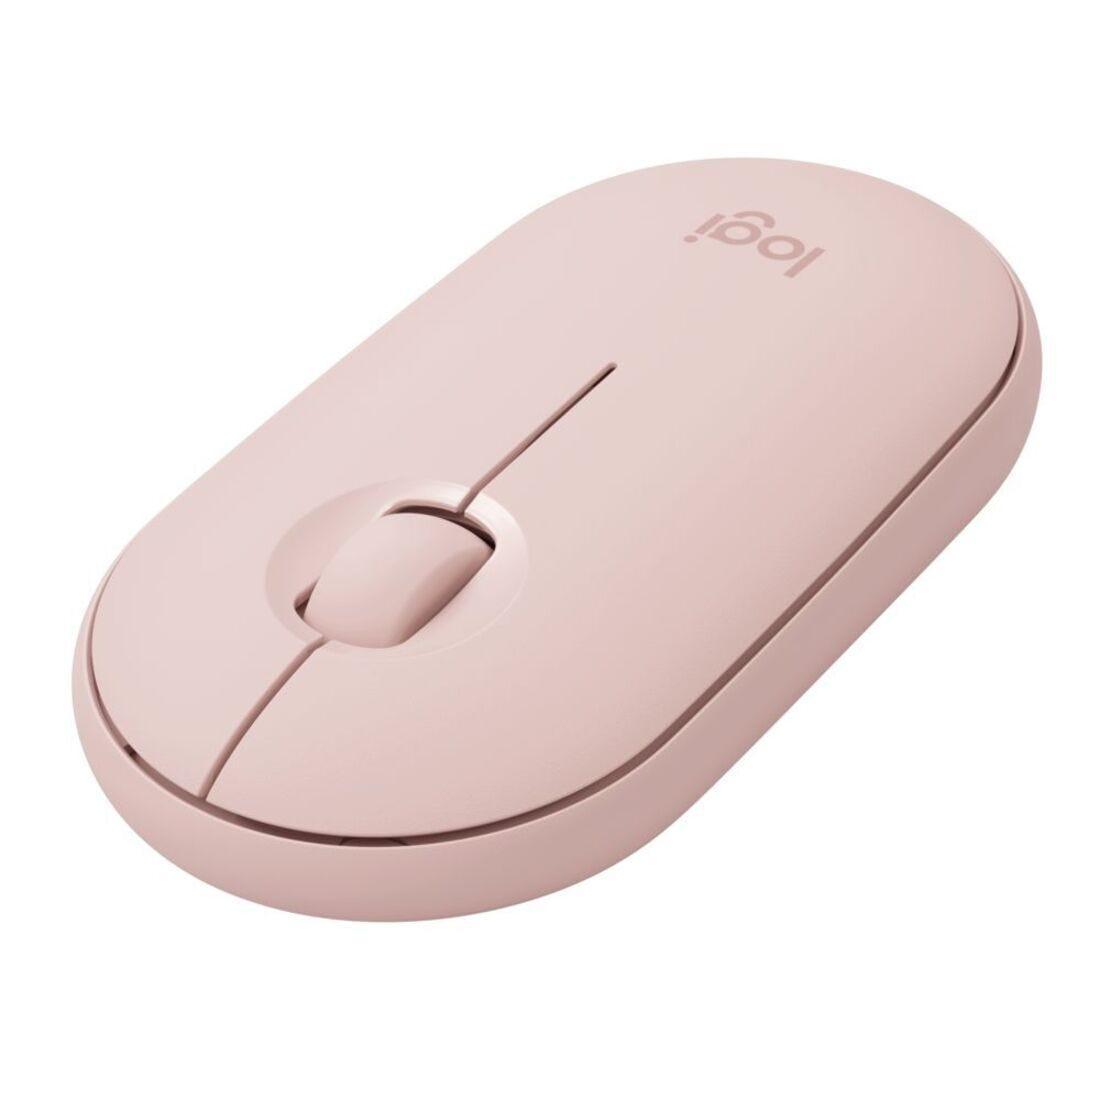 Mouse Logitech Pebble M350 Rose sem fio 910-005769-V - Mega Market